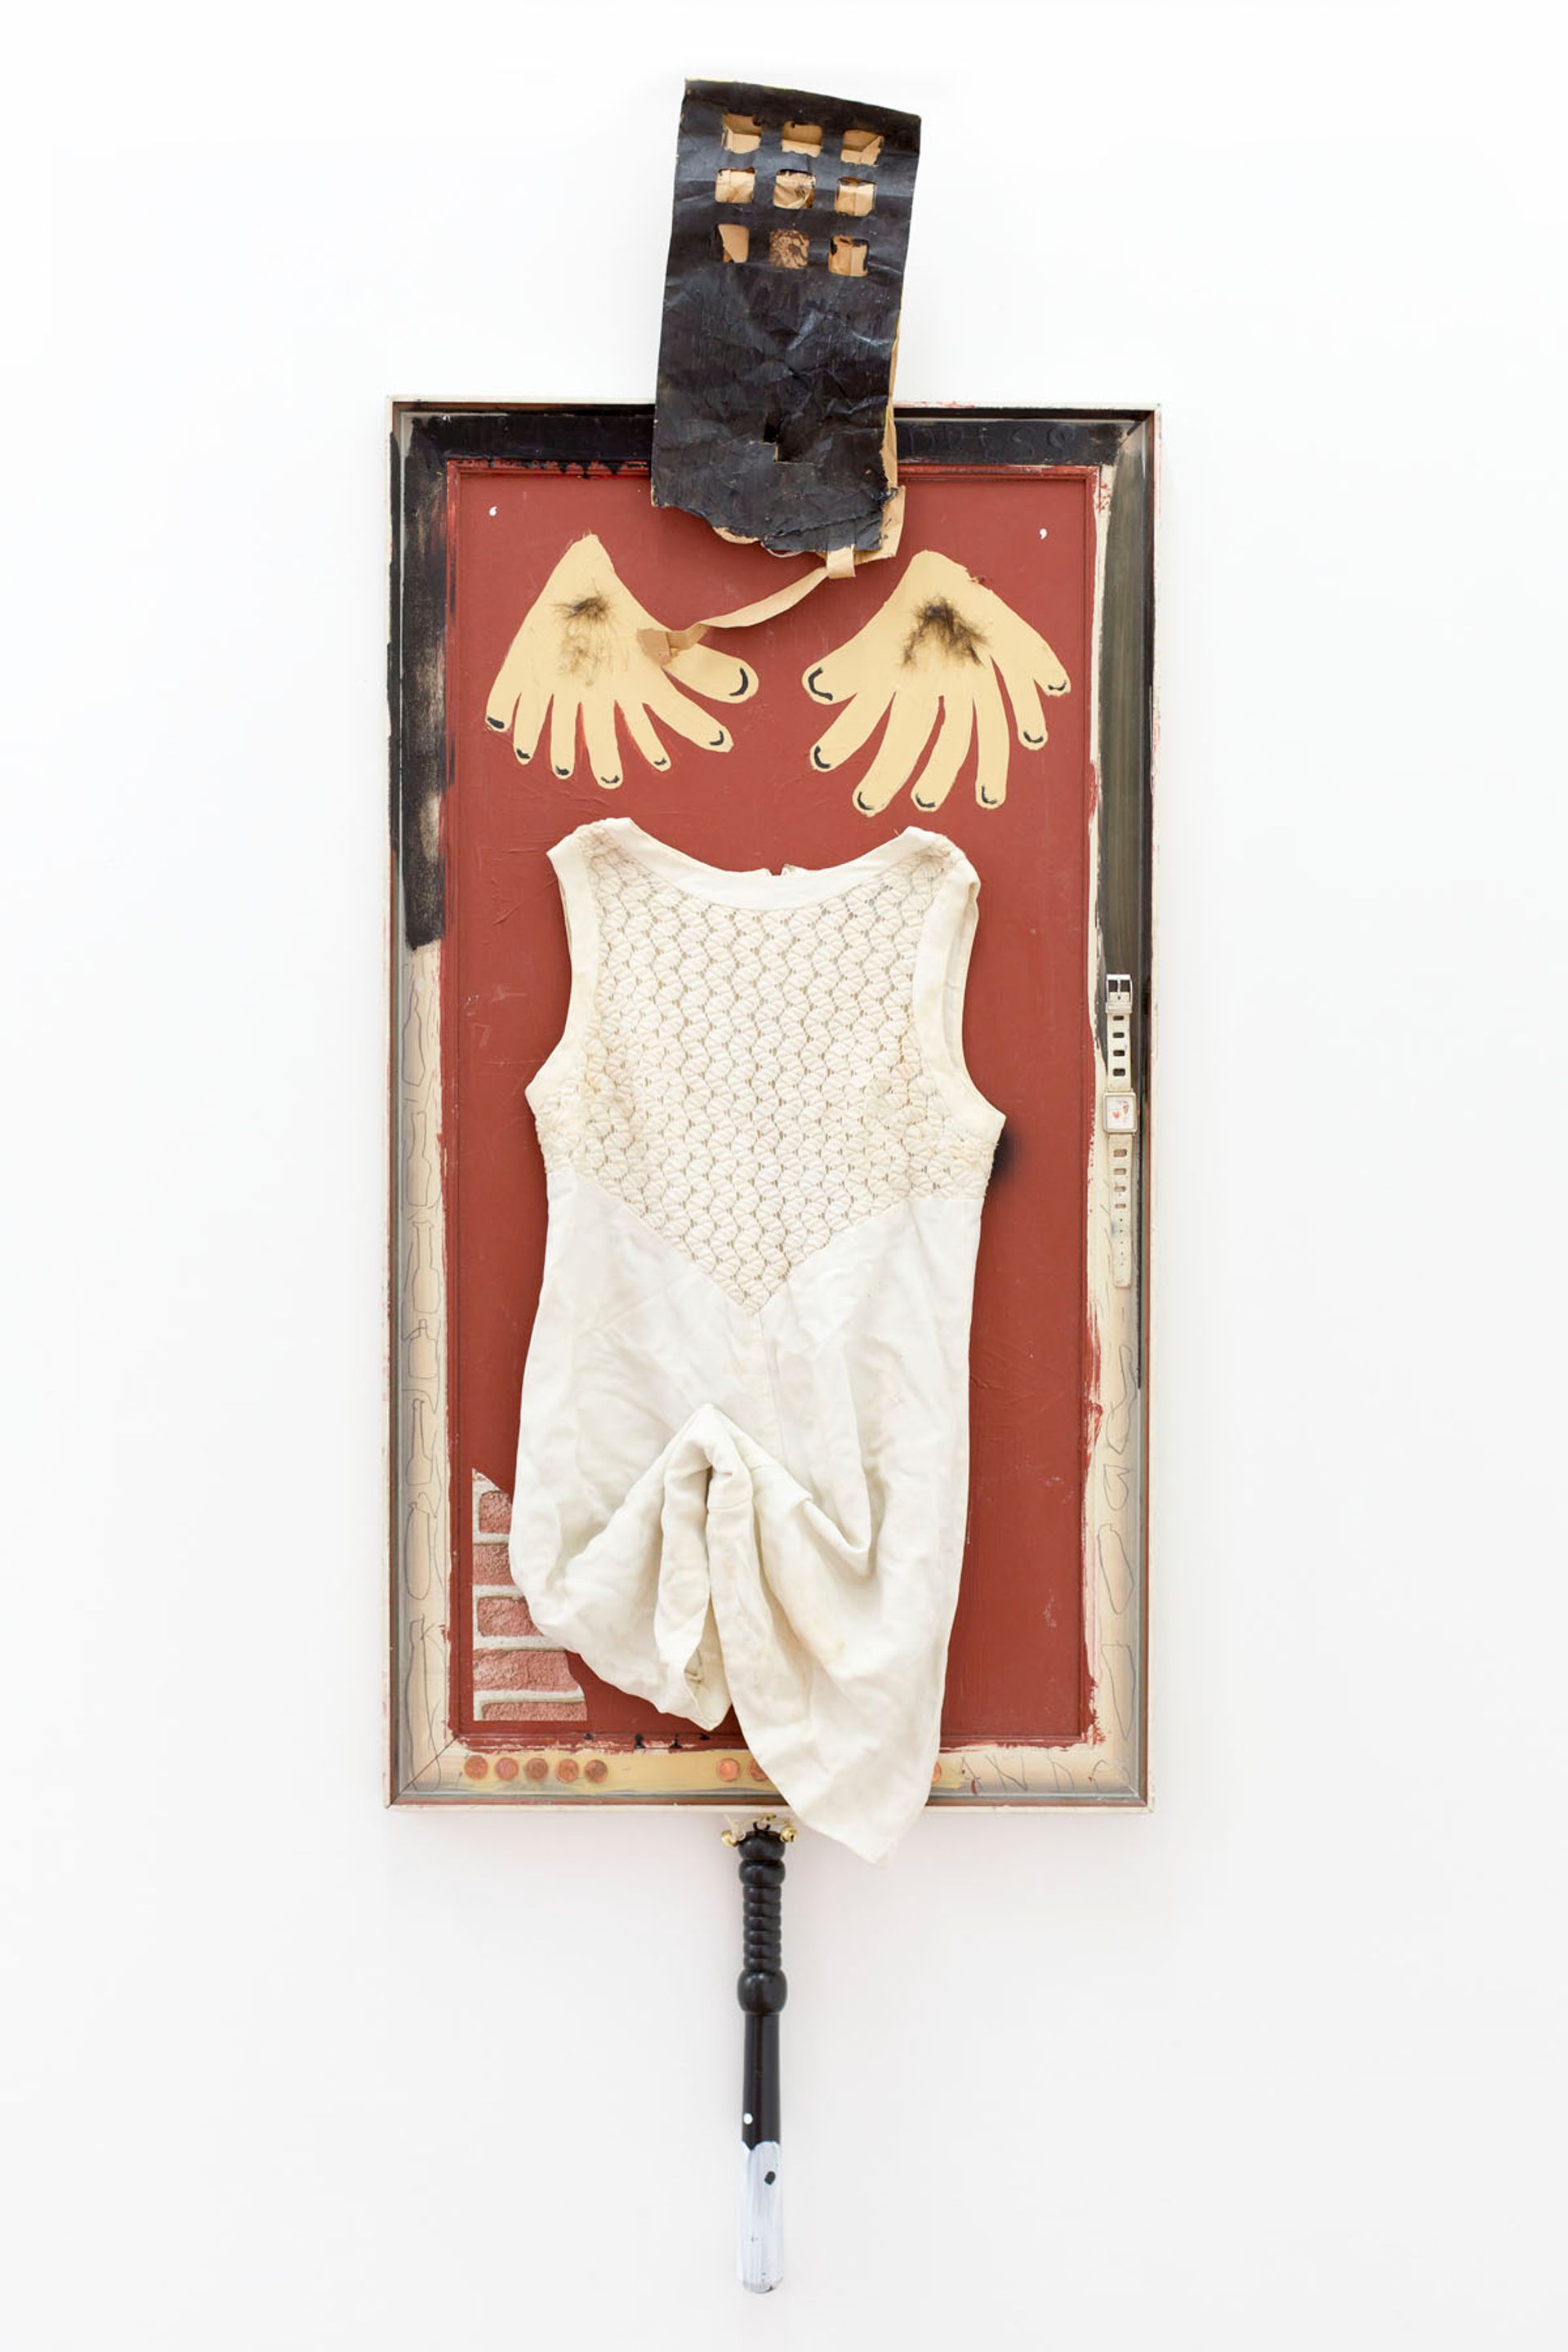 Anna McCarthy, Ying-Yang Penis, 2016, collage, 153 × 56 cm